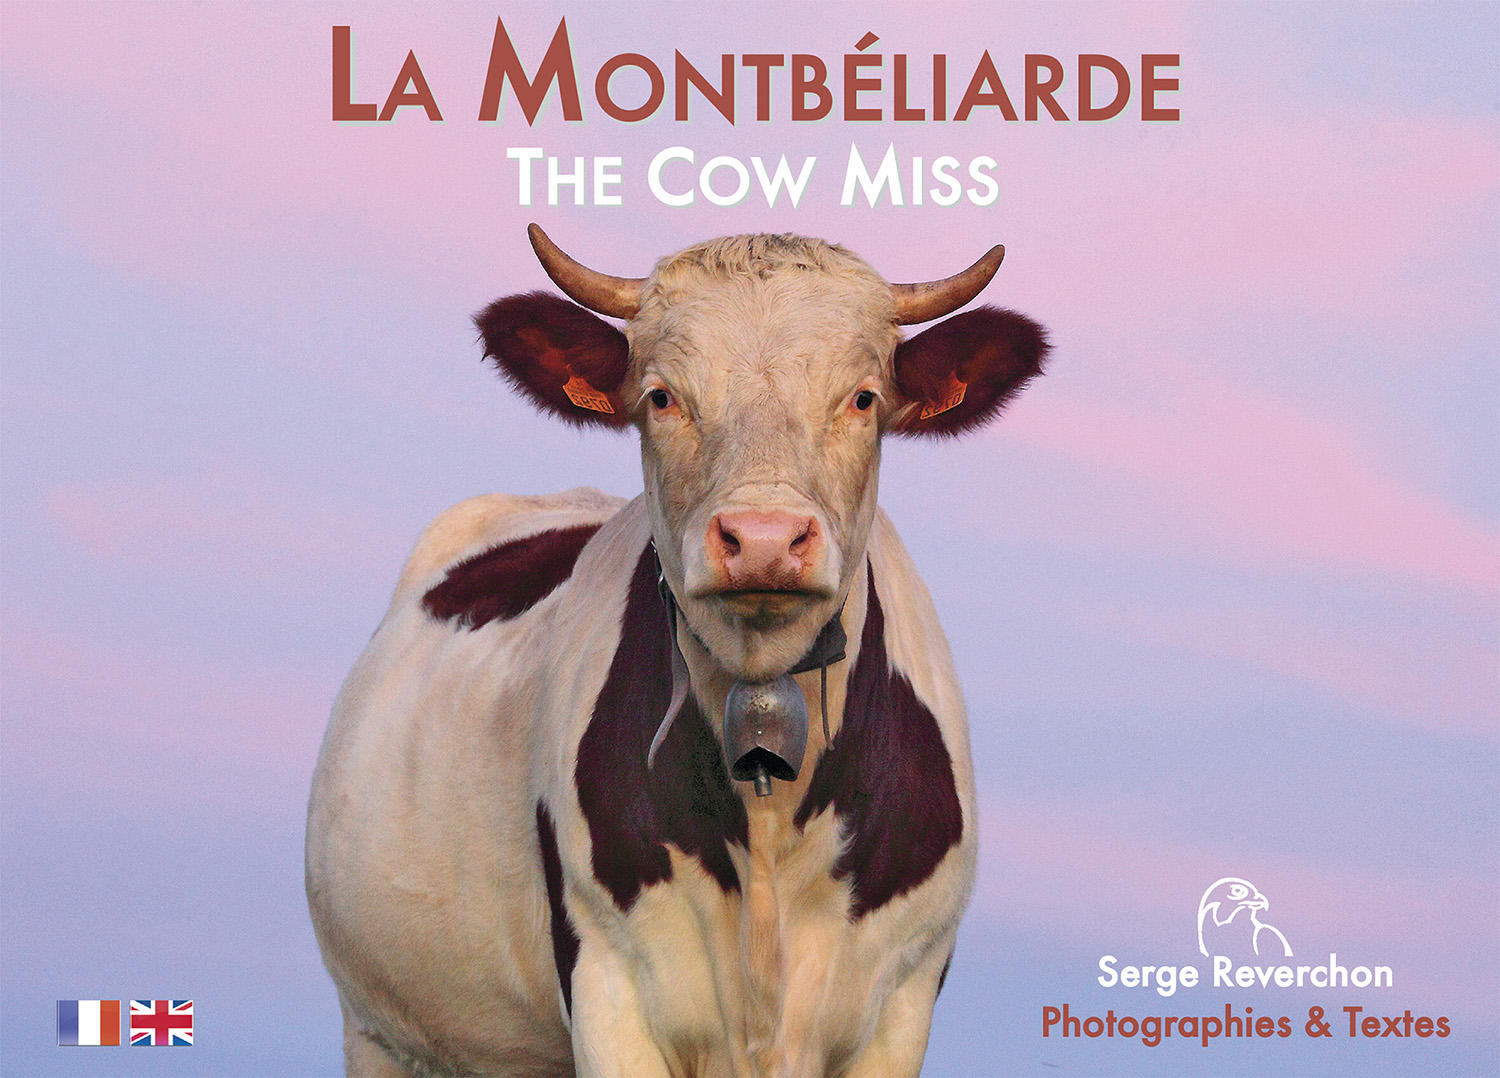 couverture livre the cow miss vache montbéliarde serge reverchon Jura Doubs Franche comté photographe photographie. image